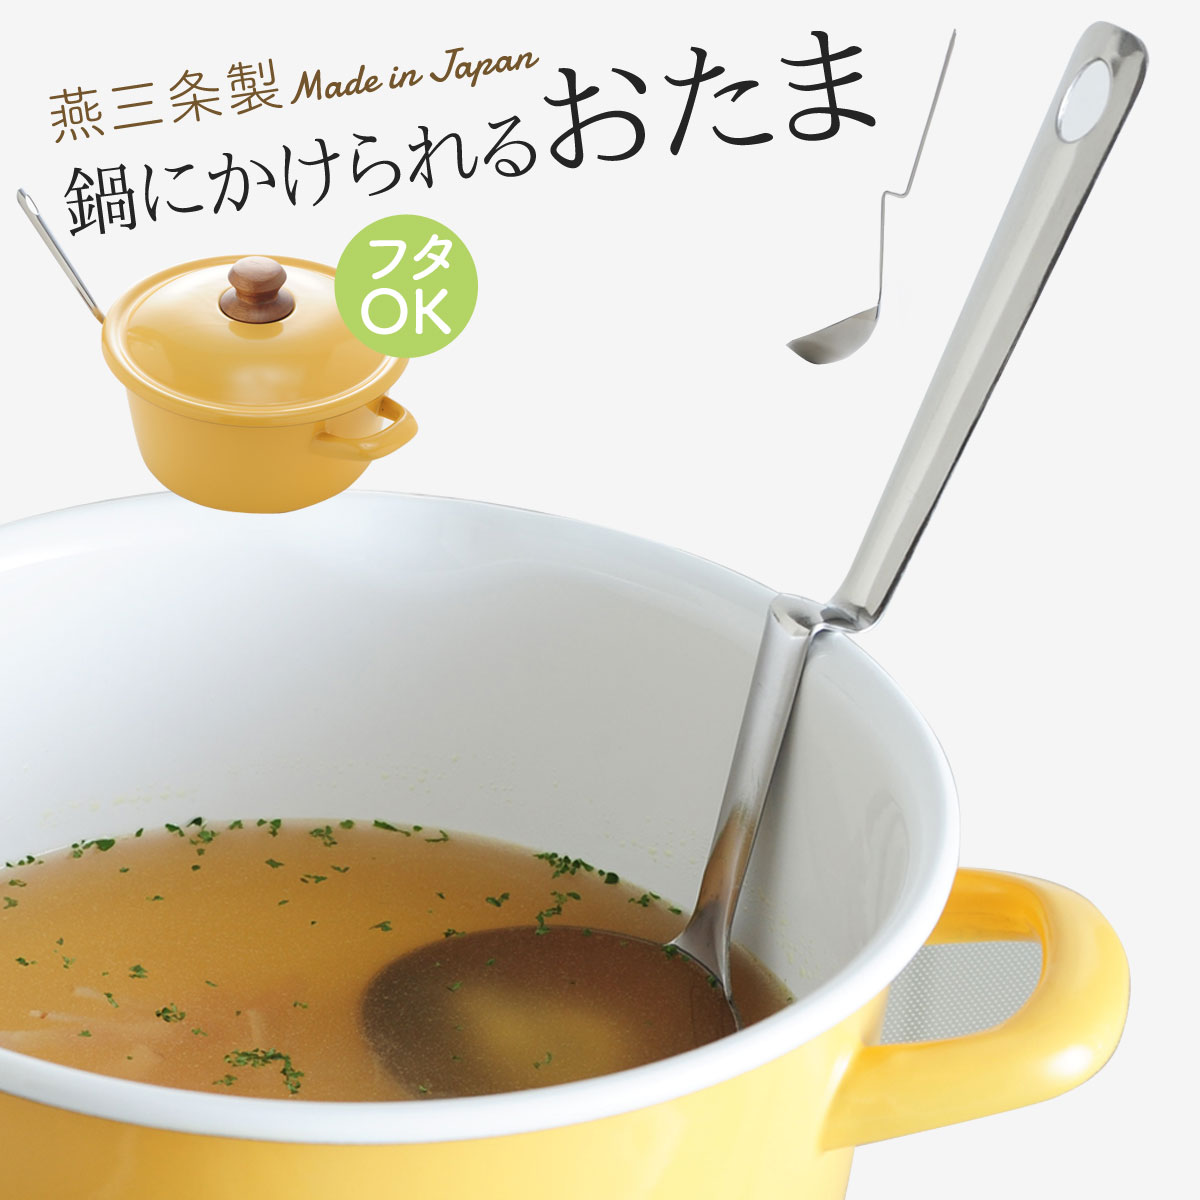 日本進口日本製不鏽鋼隨手掛可掛式不滑落大湯勺大湯匙勺子火鍋料理必備---日本製---現貨*1